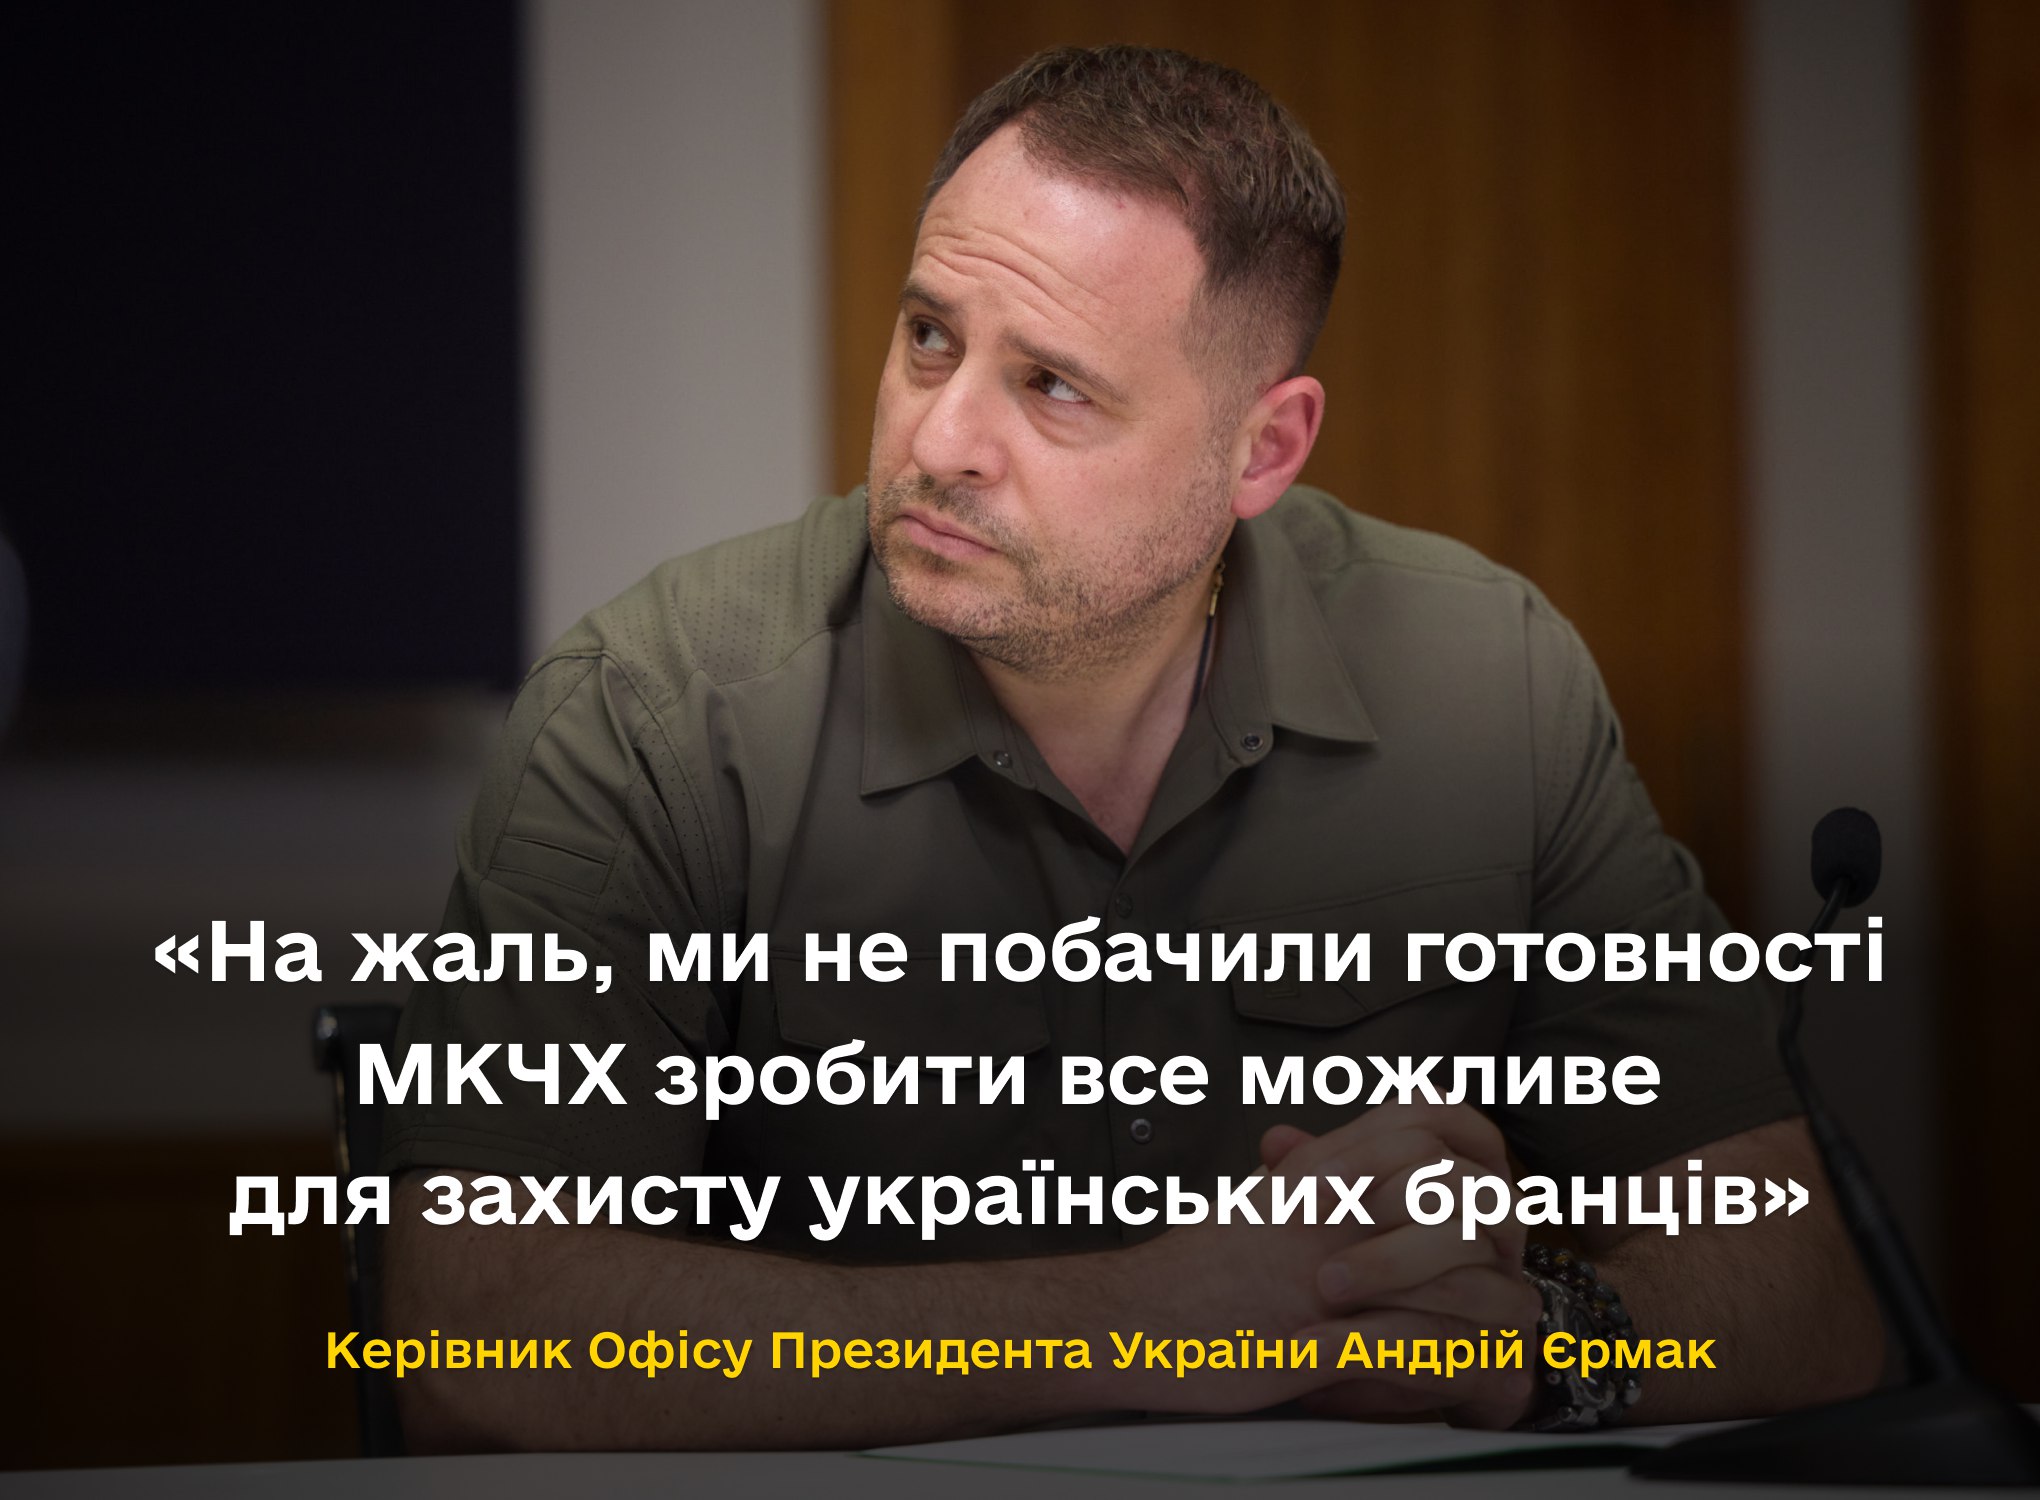 Андрій Єрмак: На жаль, ми не побачили готовності МКЧХ зробити все можливе для захисту українських бранців